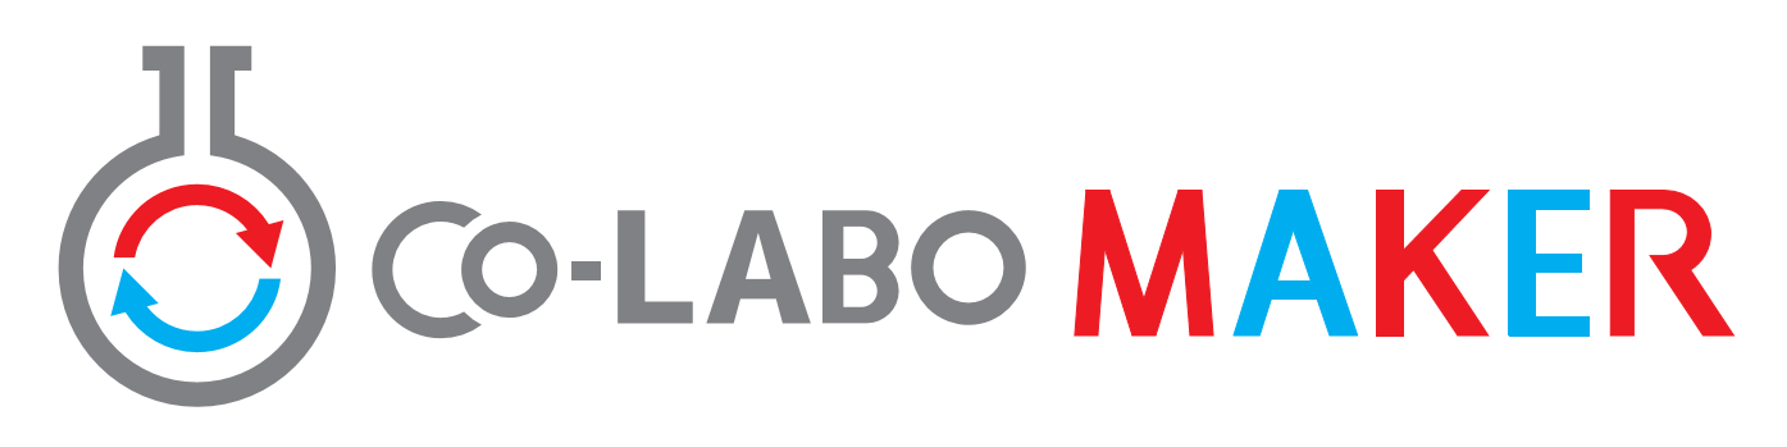 株式会社Co-LABO MAKER